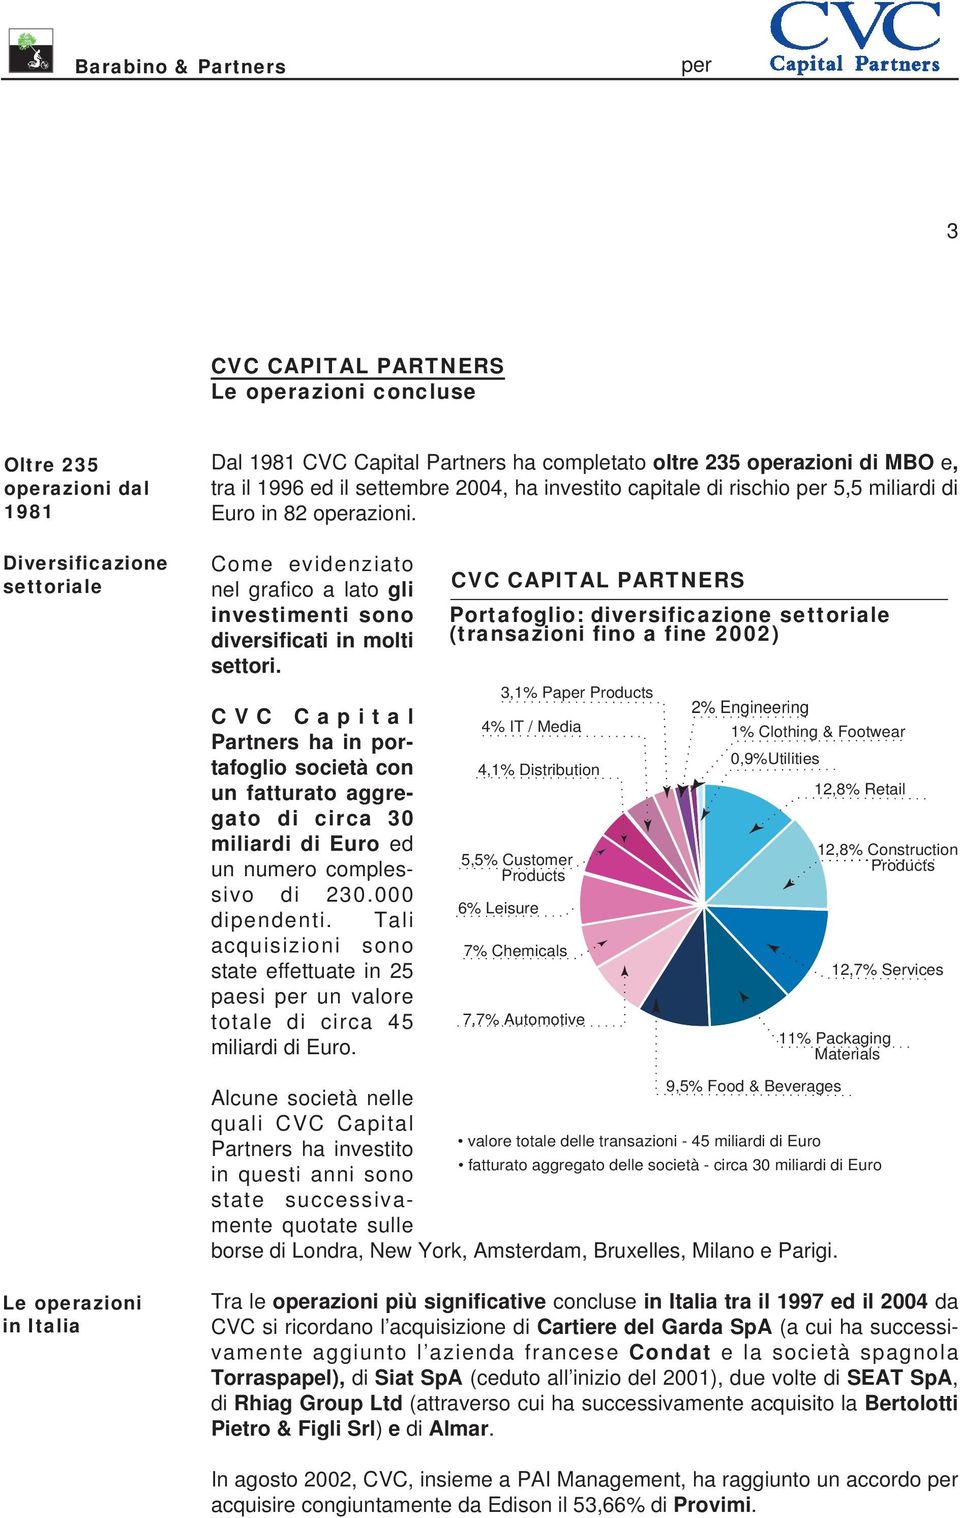 CVC Capital Partners ha in portafoglio società con un fatturato aggregato di circa 30 miliardi di Euro ed un numero complessivo di 230.000 dipendenti.